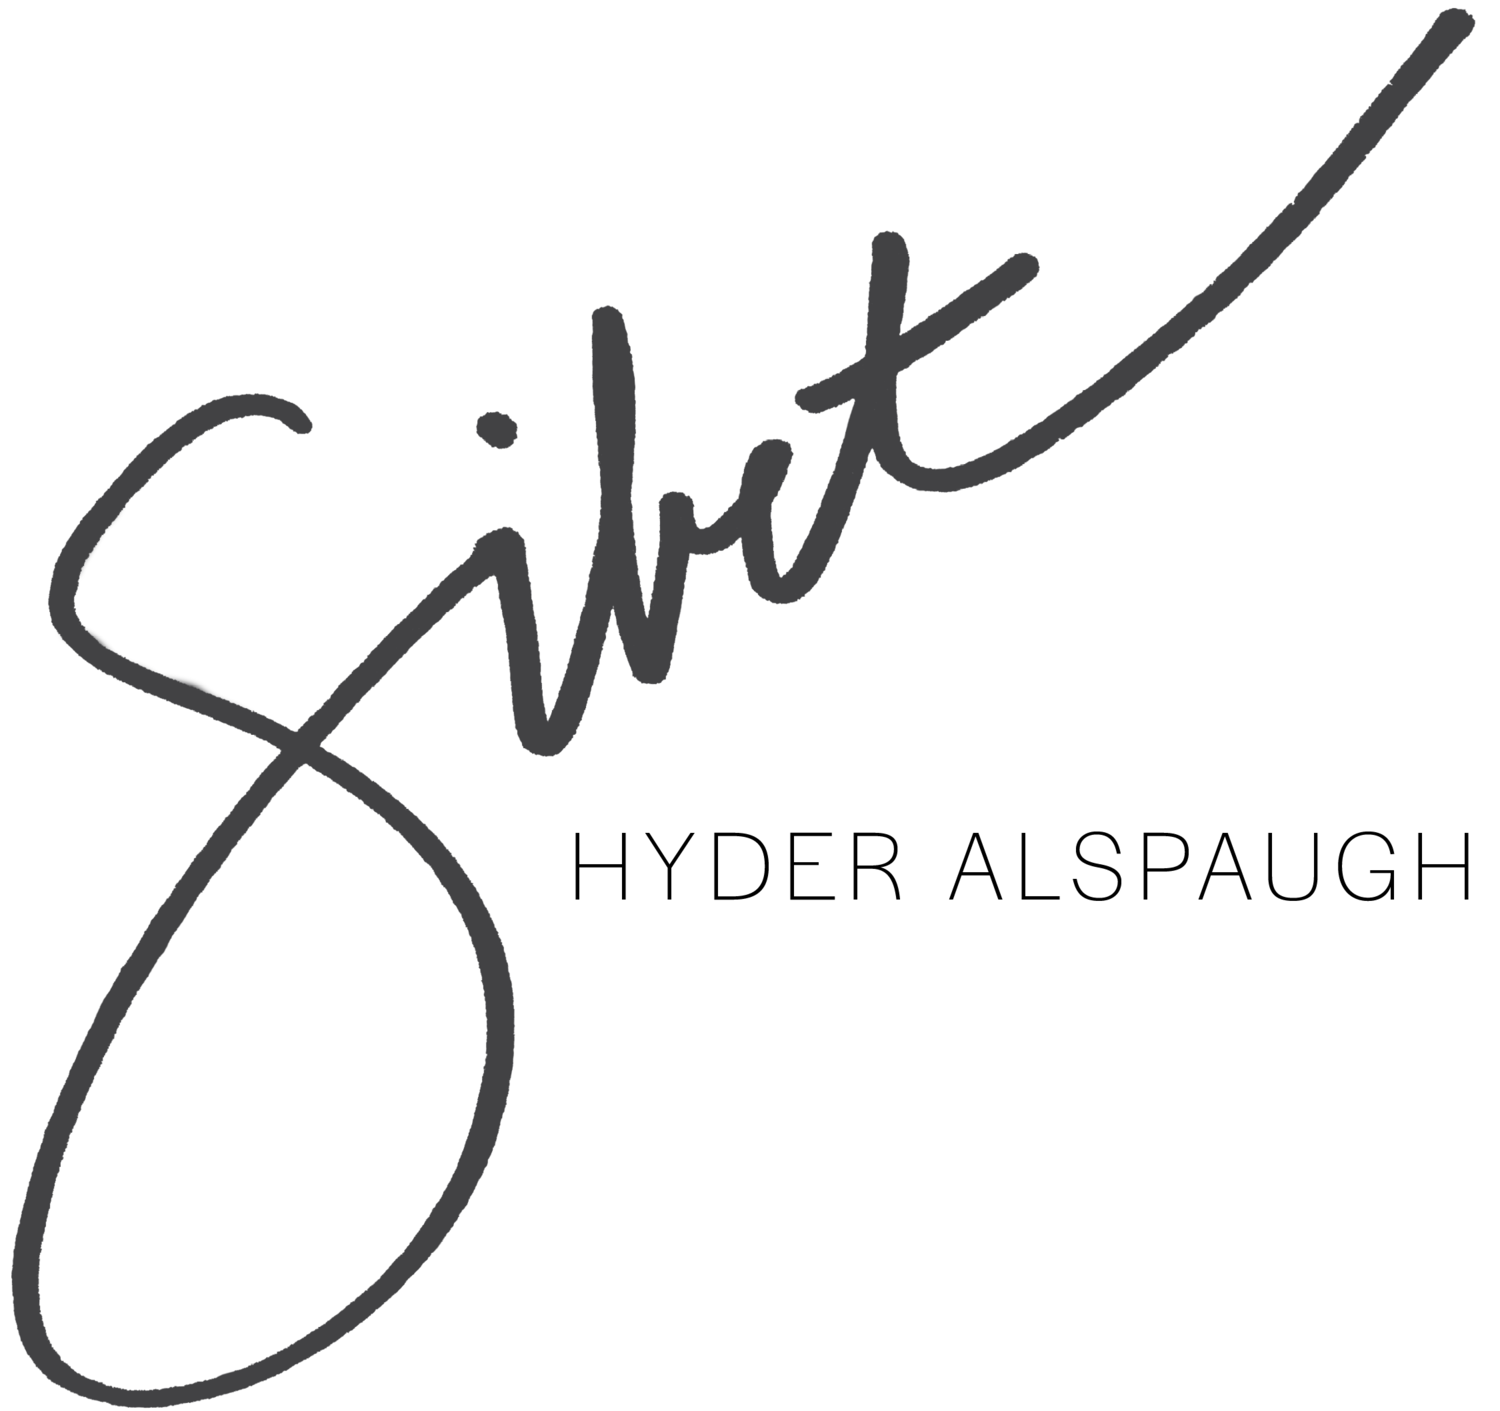 Sibet Hyder Alspaugh